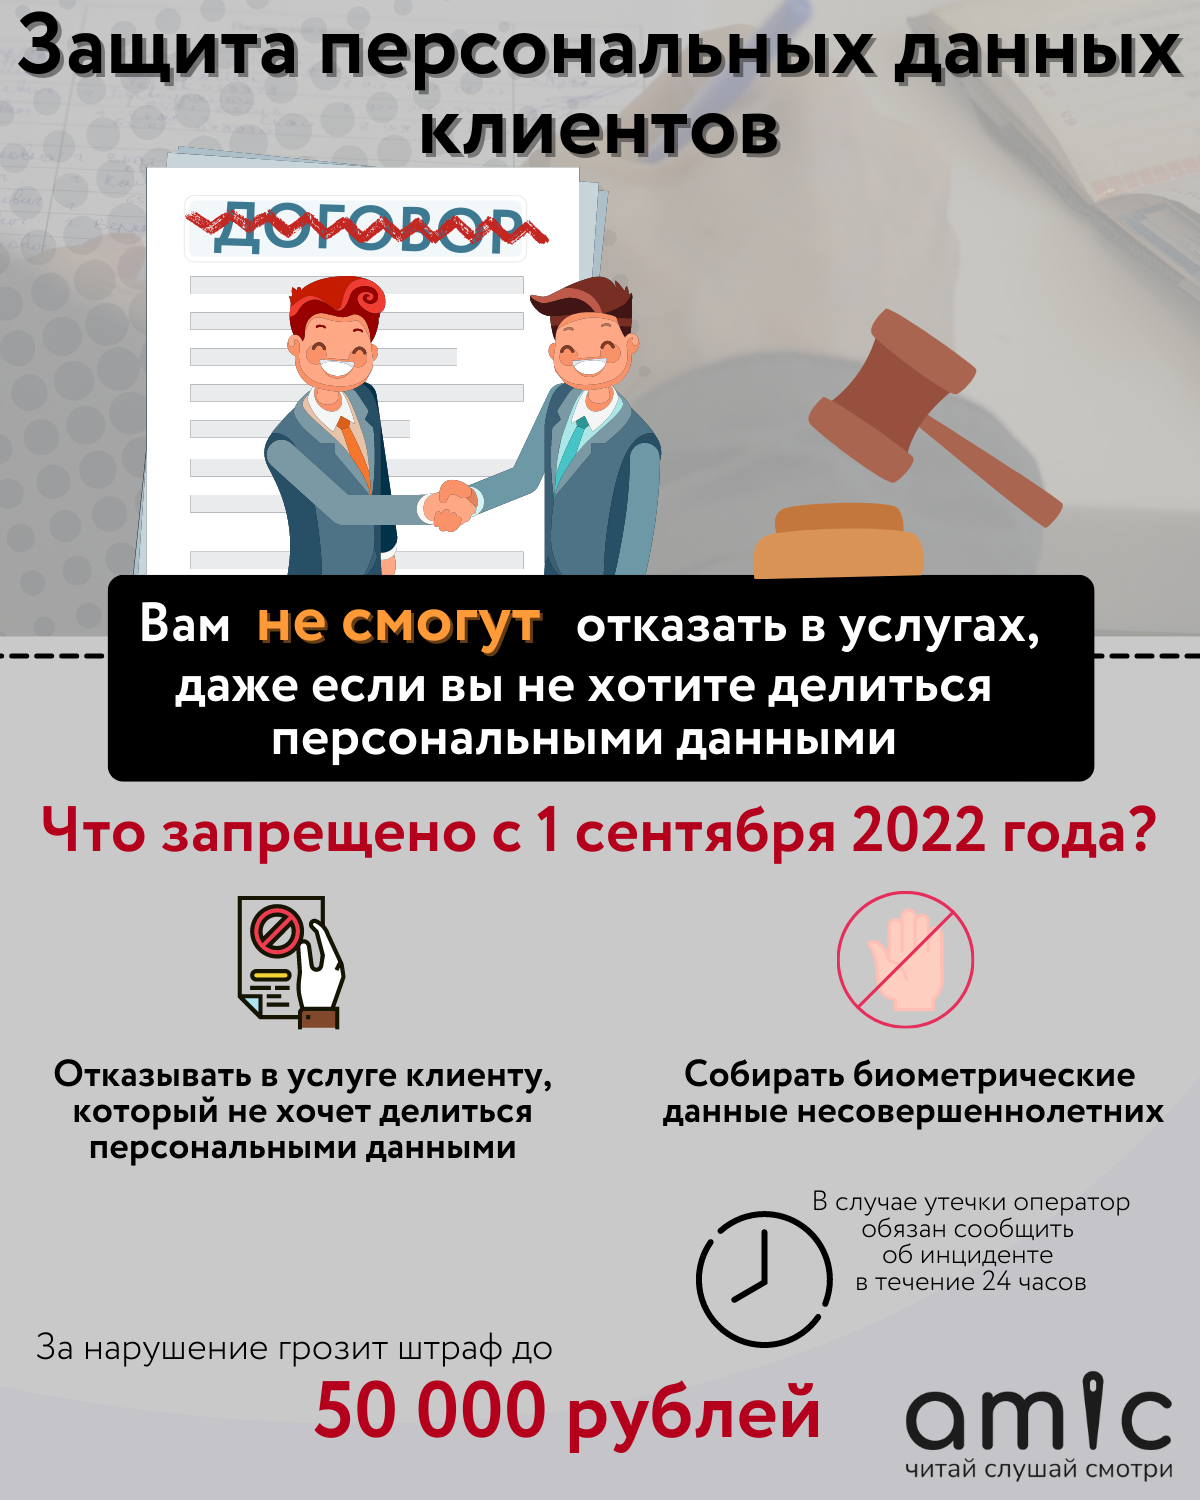 Защита персональных данных с 1 сентября 2022. Сбор персональных данных с 1 сентября. Законы с 1 сентября 2022. Что изменится в жизни россиян с 1 сентября.